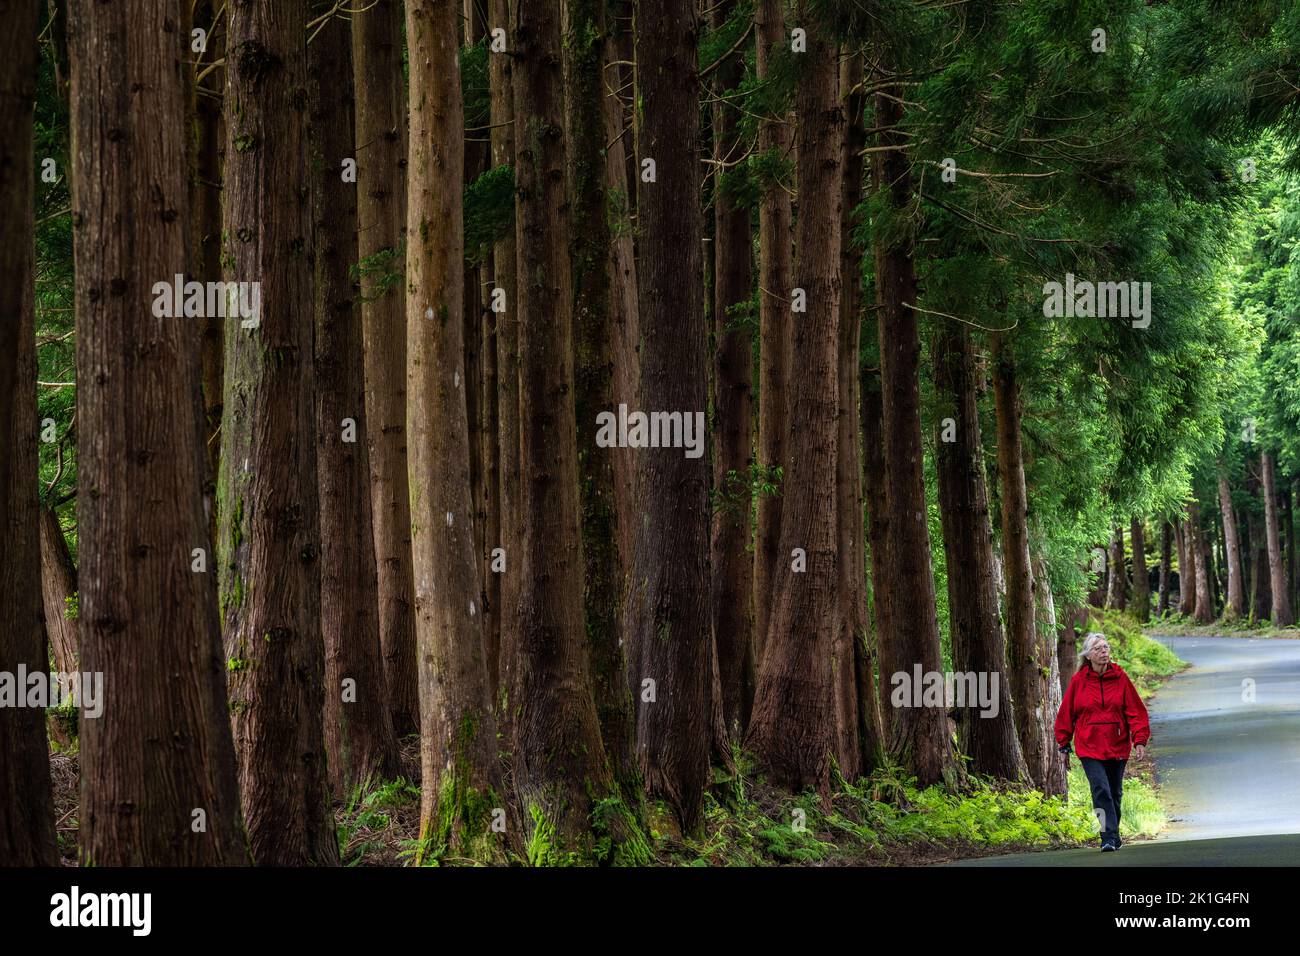 Une femme passe devant des cèdres japonais géants dans le parc naturel Reserva Florestal parcial da Serra de S. Barbara e dos Misterios Negros à Terceira, Açores, Portugal. Plus de 22 pour cent des terres de l'île de Terceira sont mises de côté comme réserves naturelles. Banque D'Images